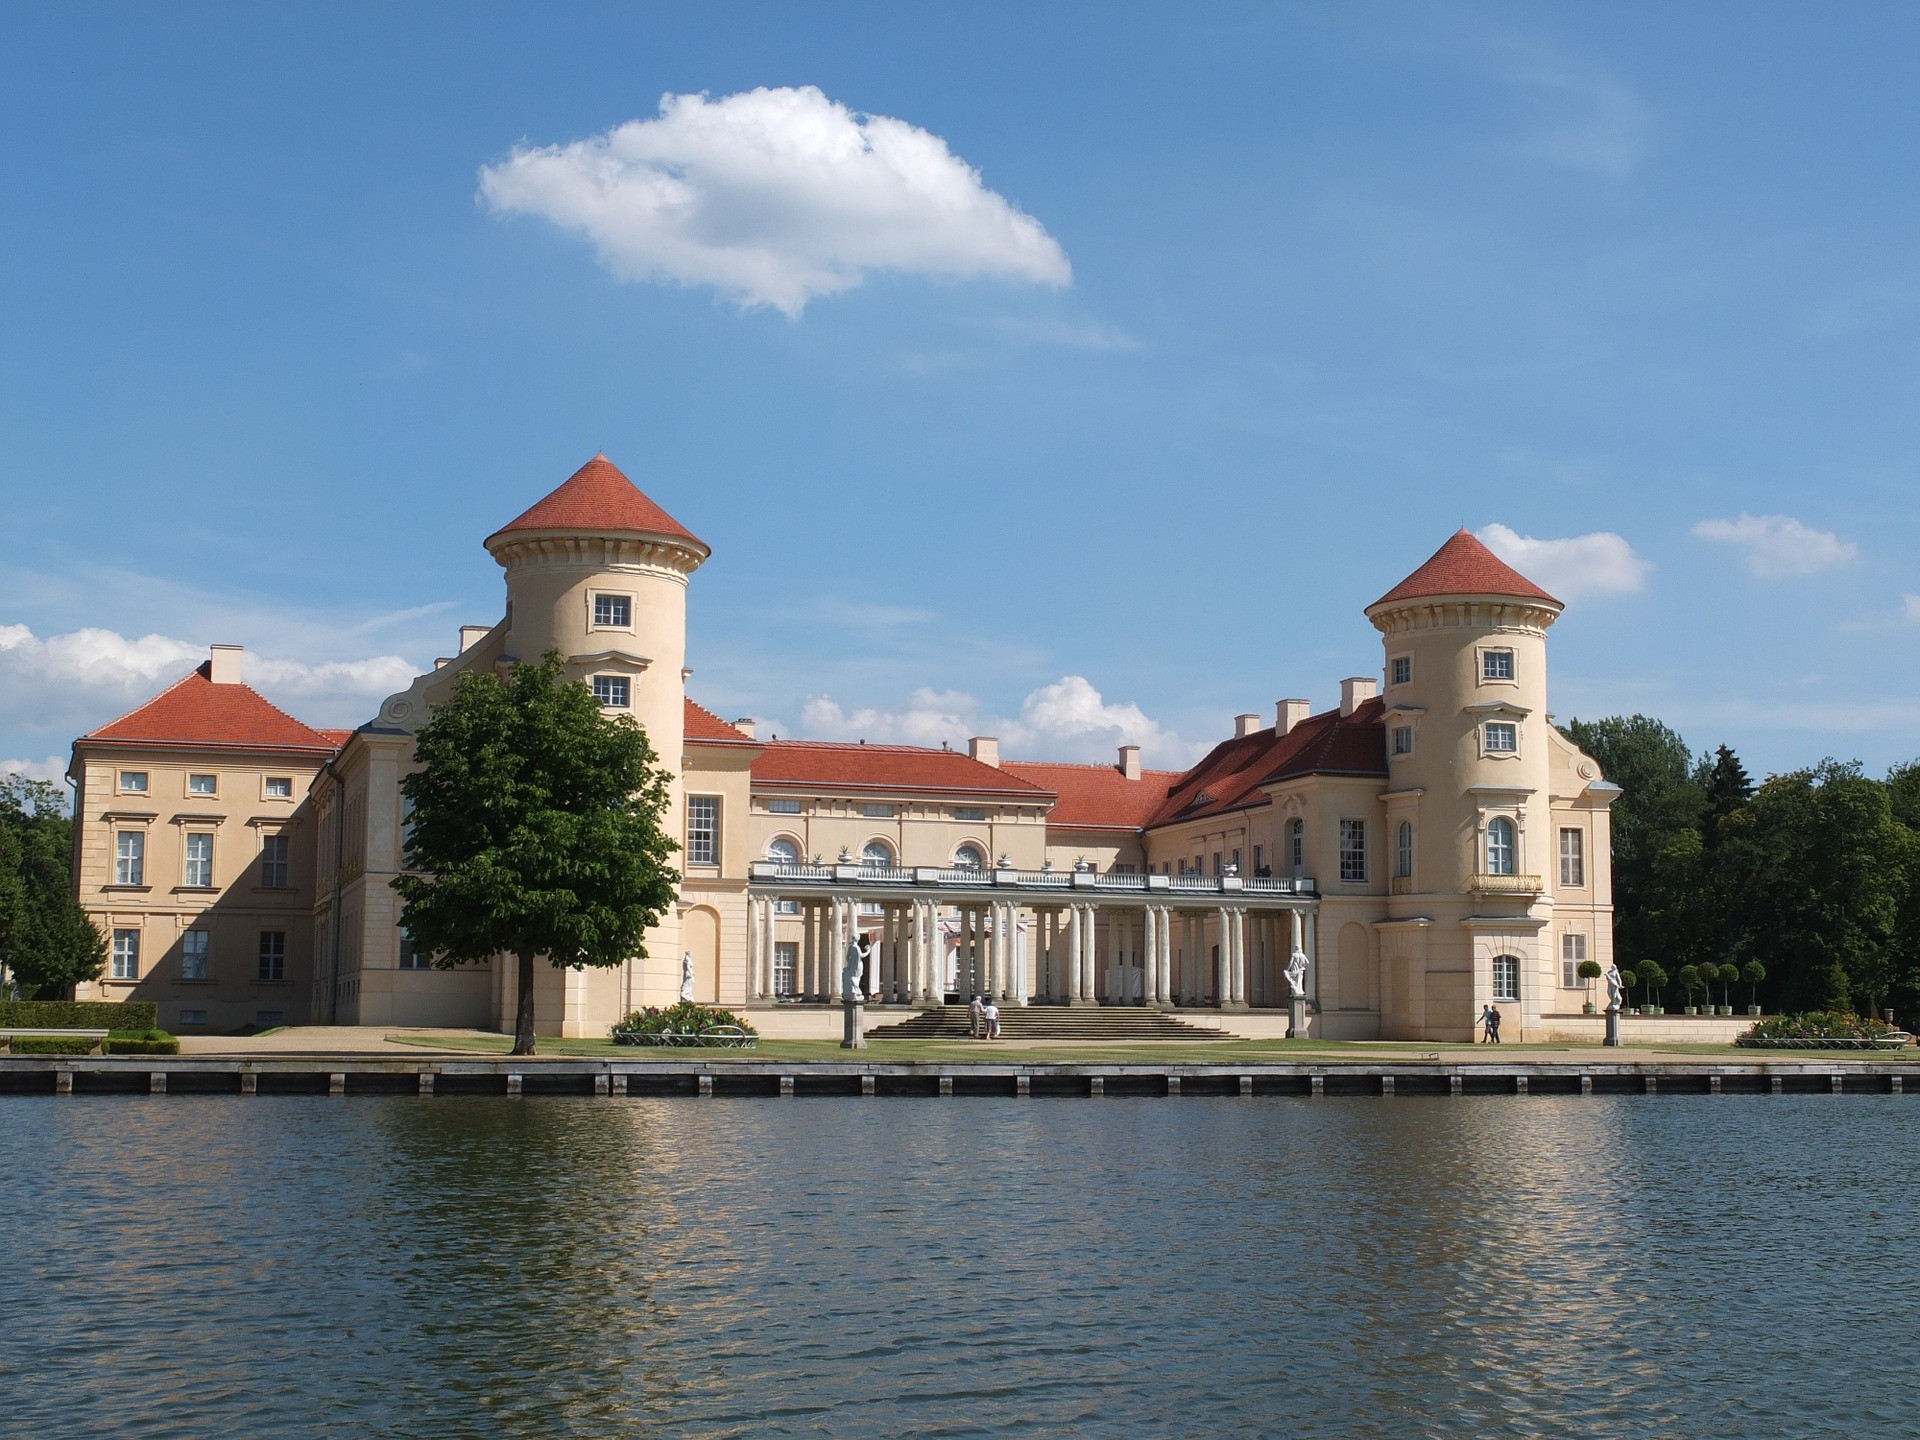 Osterfestspiele Schloss Rheinsberg